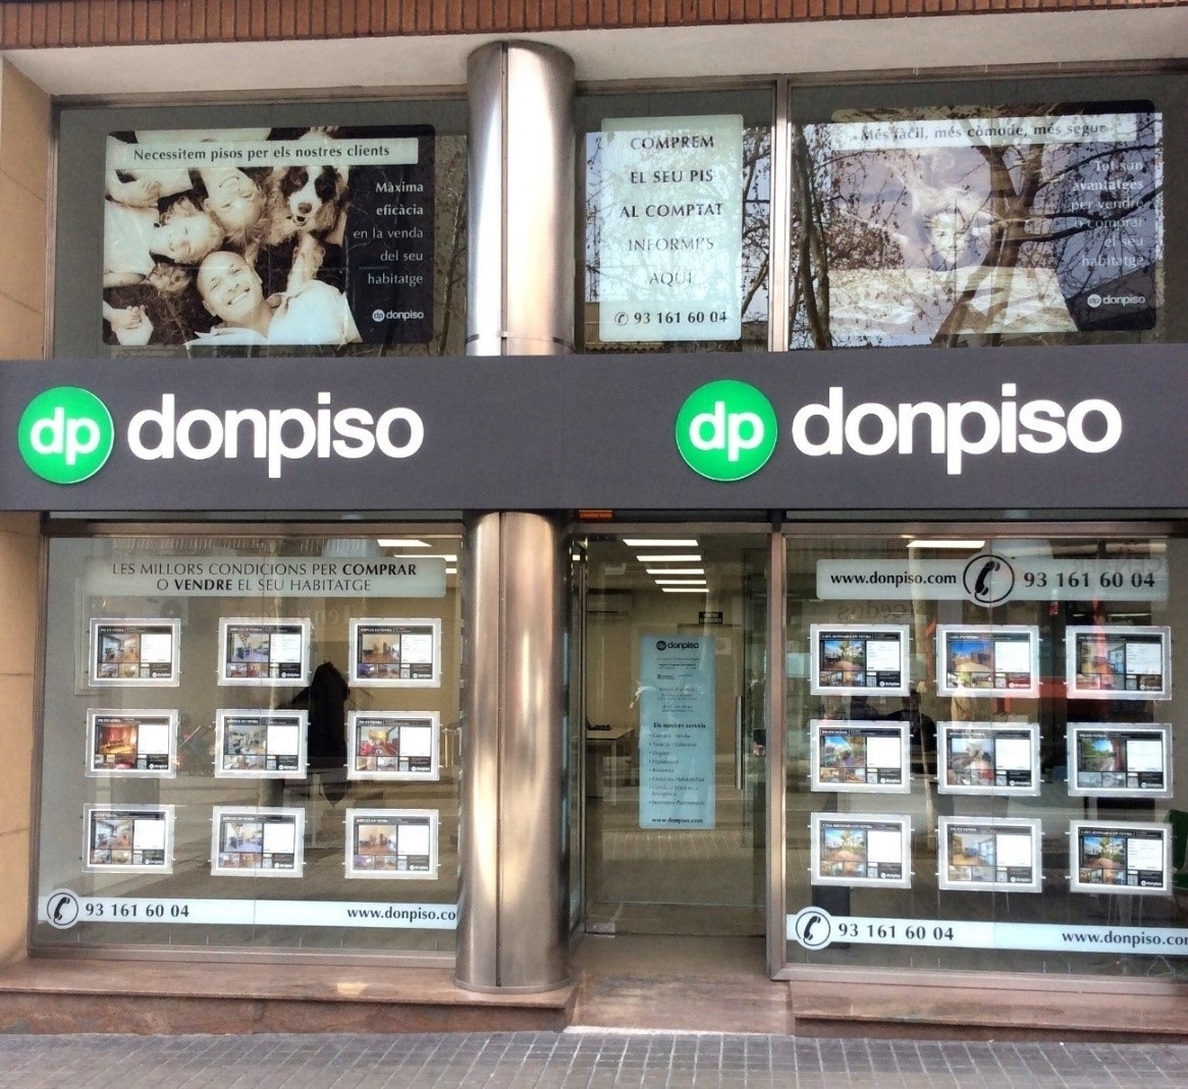 Donpiso alcanza las 90 oficinas con las nuevas franquicias de Cataluña y Las Palmas